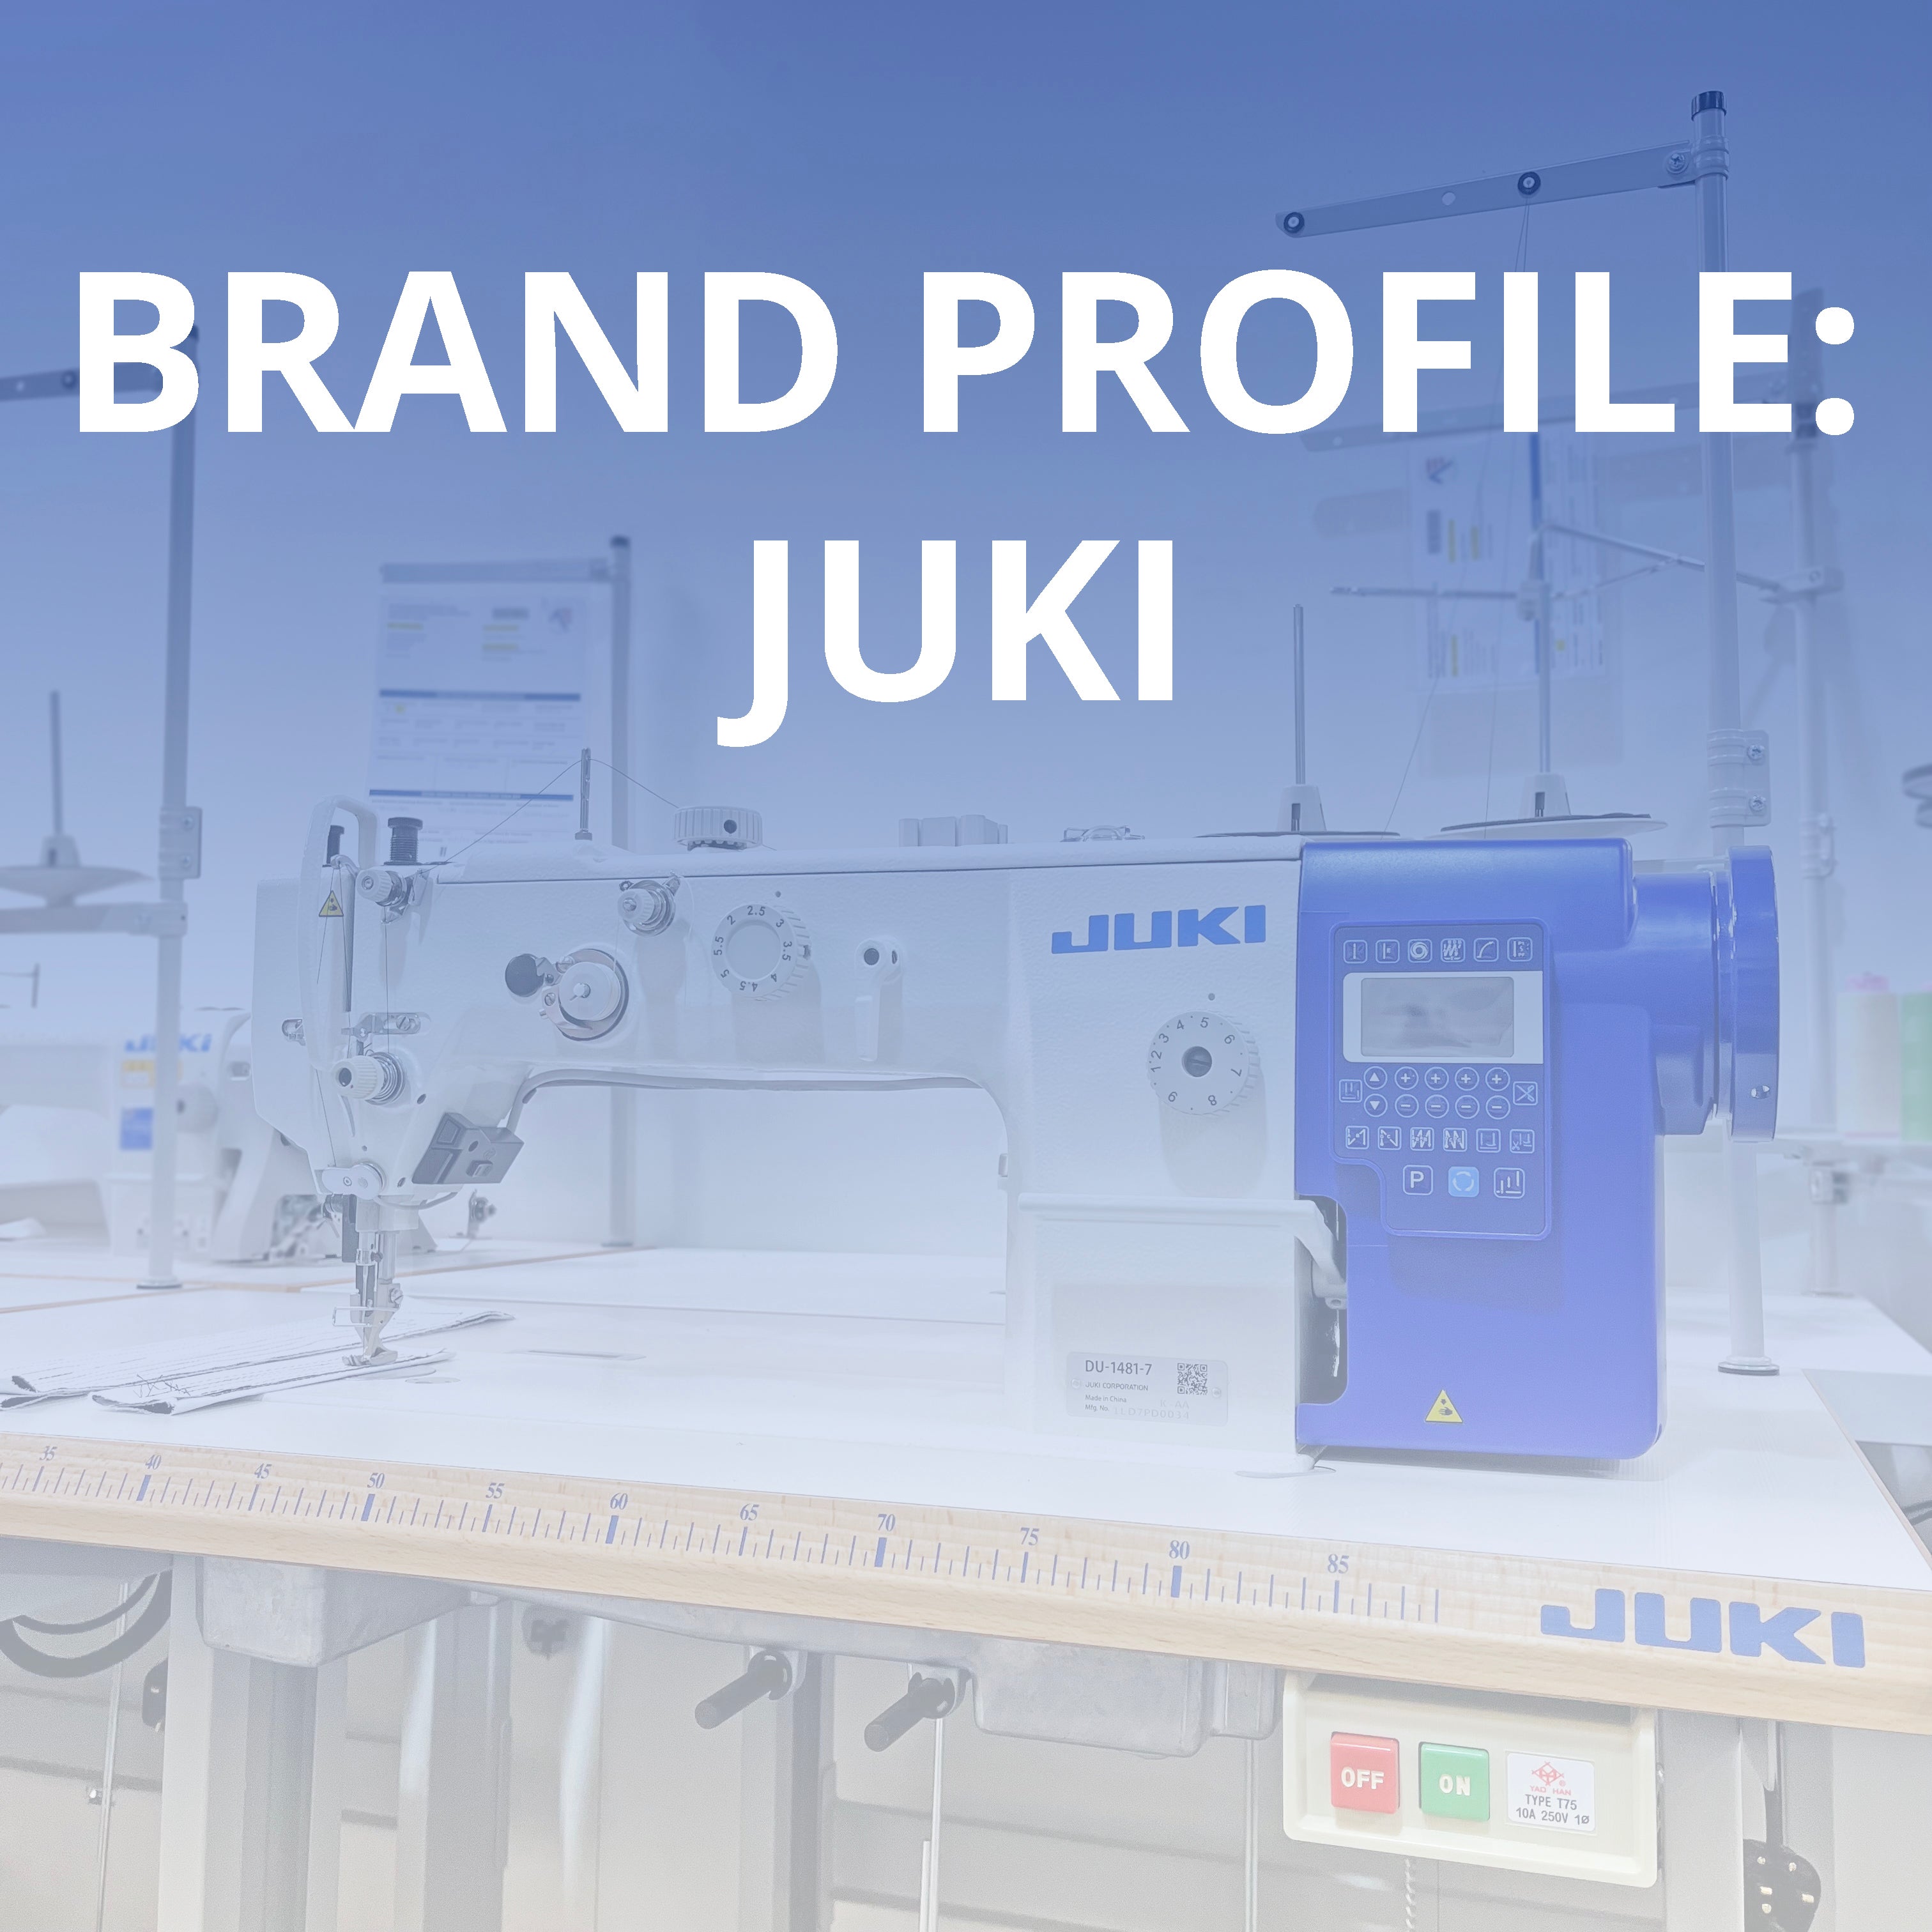 Brand Profile: JUKI